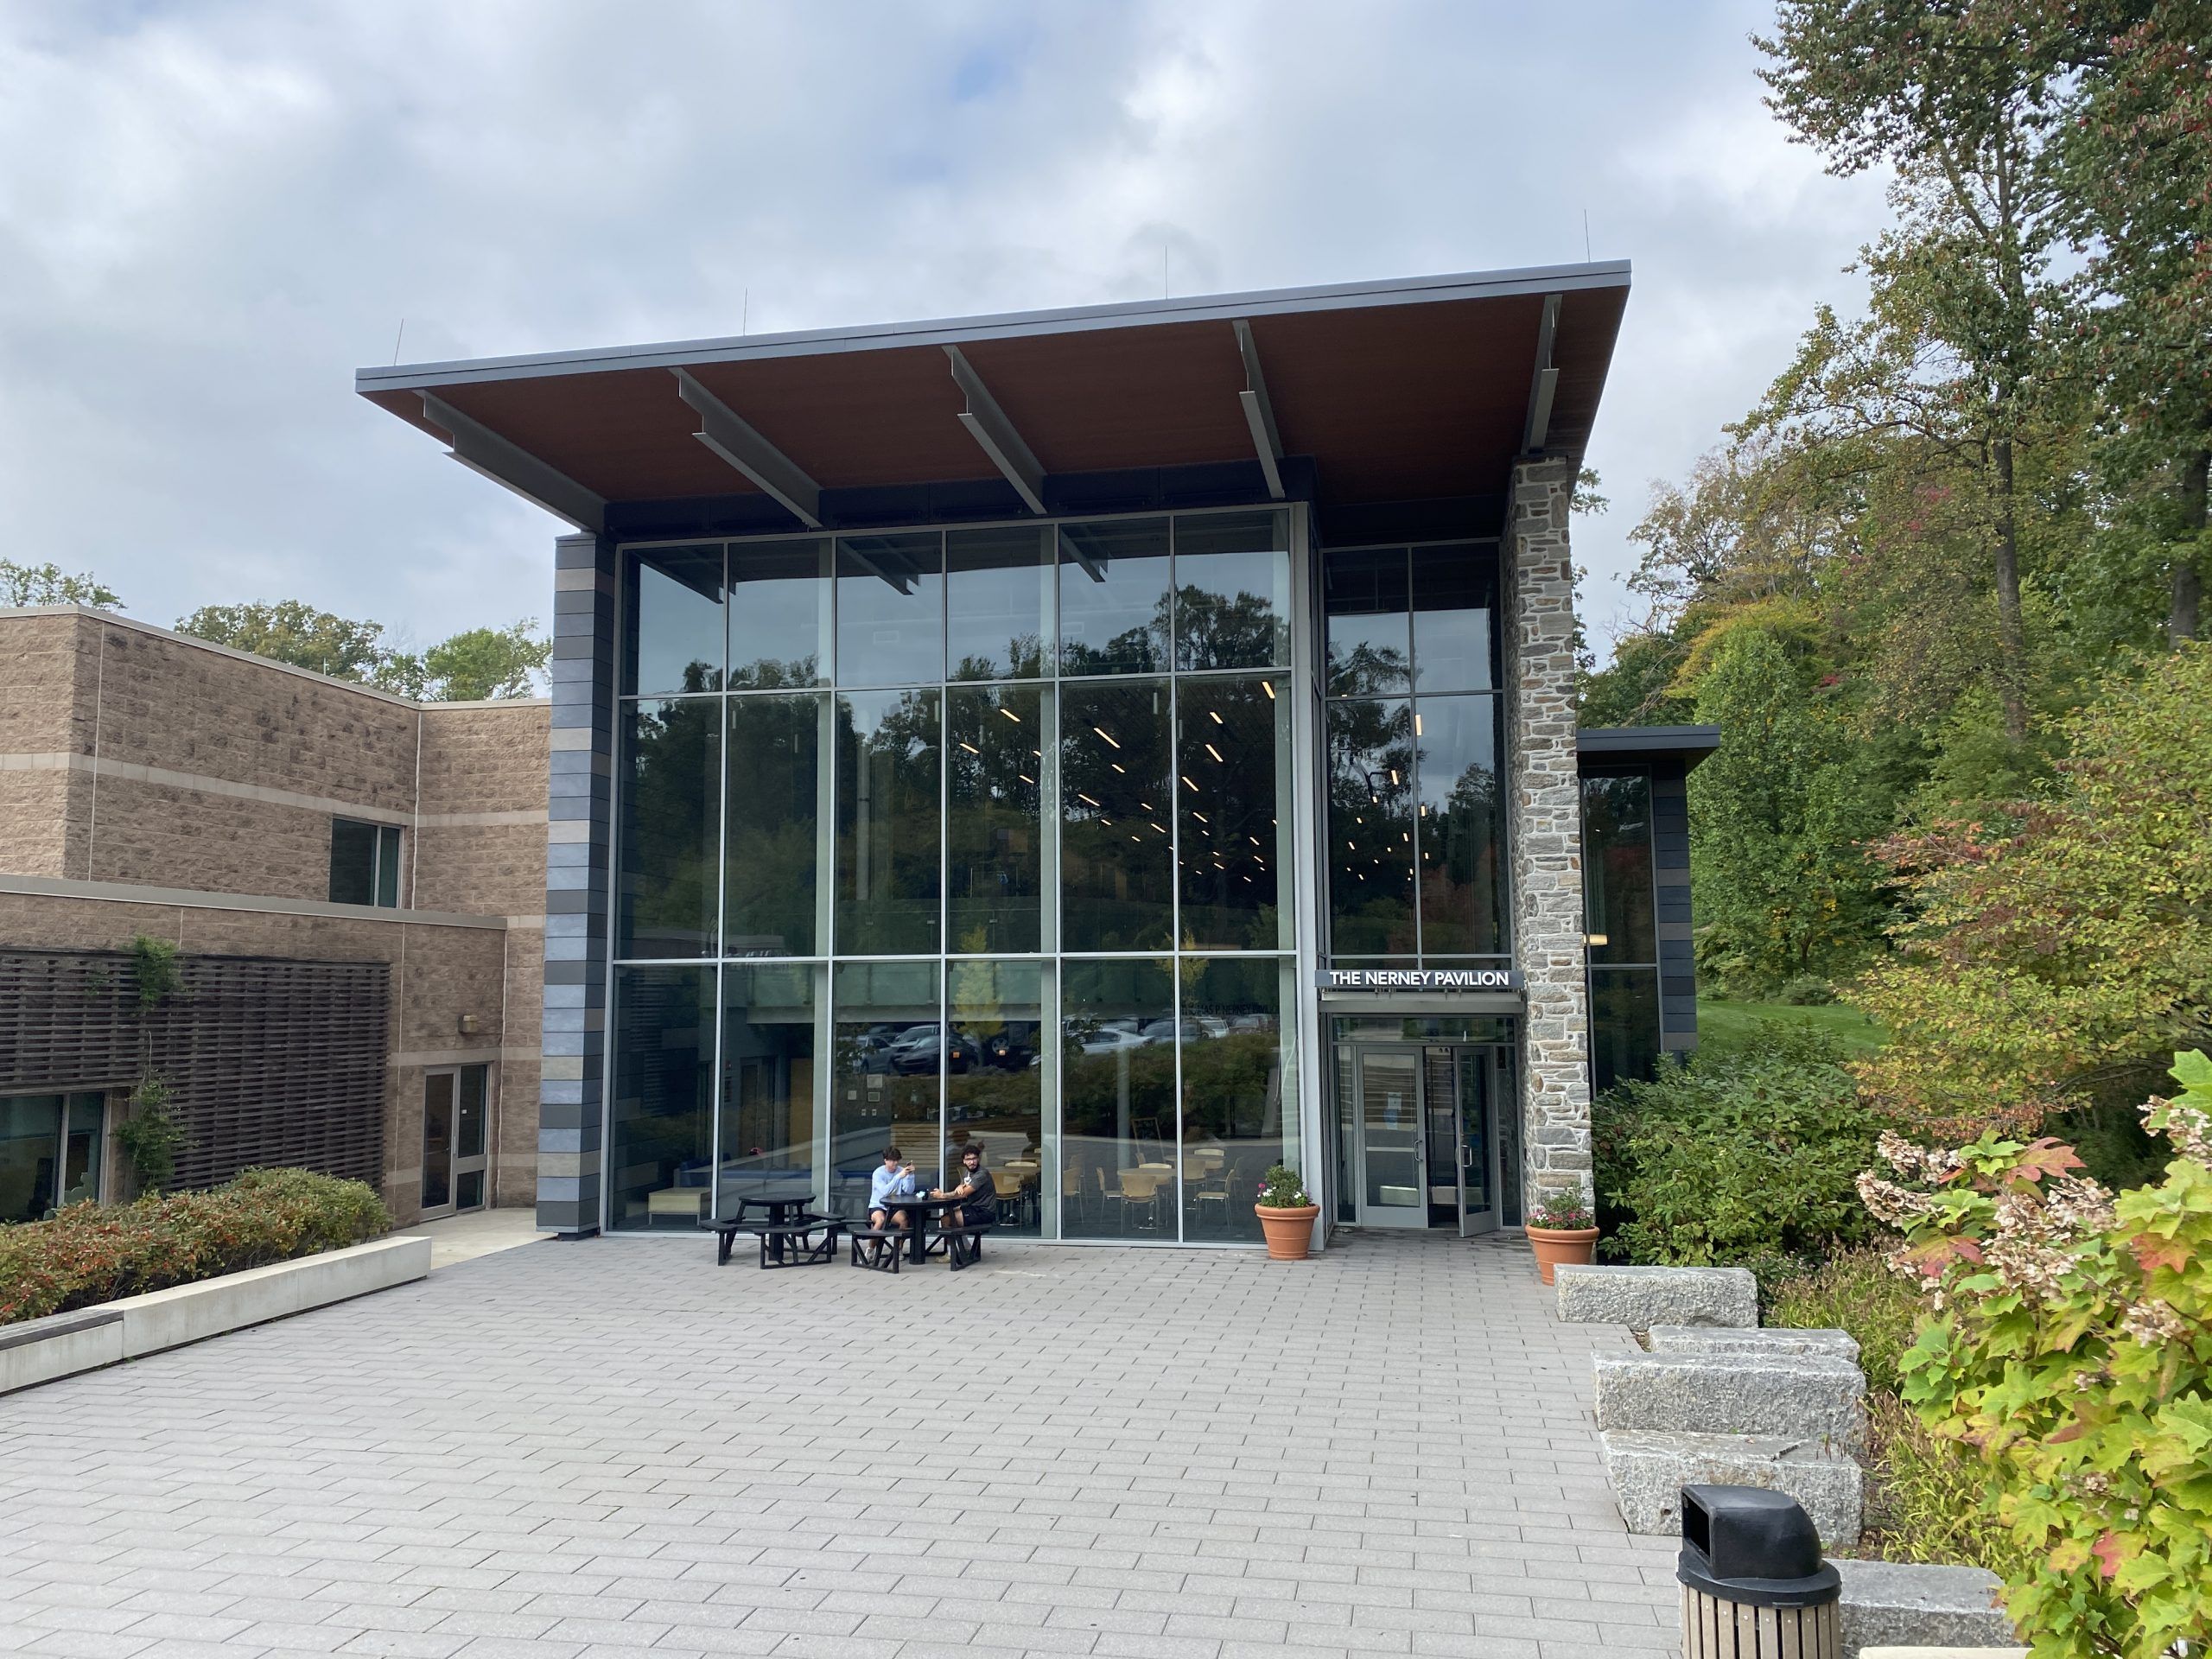 Main Entrance of the Dixon Center (Nerney Pavilion entrance)

photo: Chris Schaller 